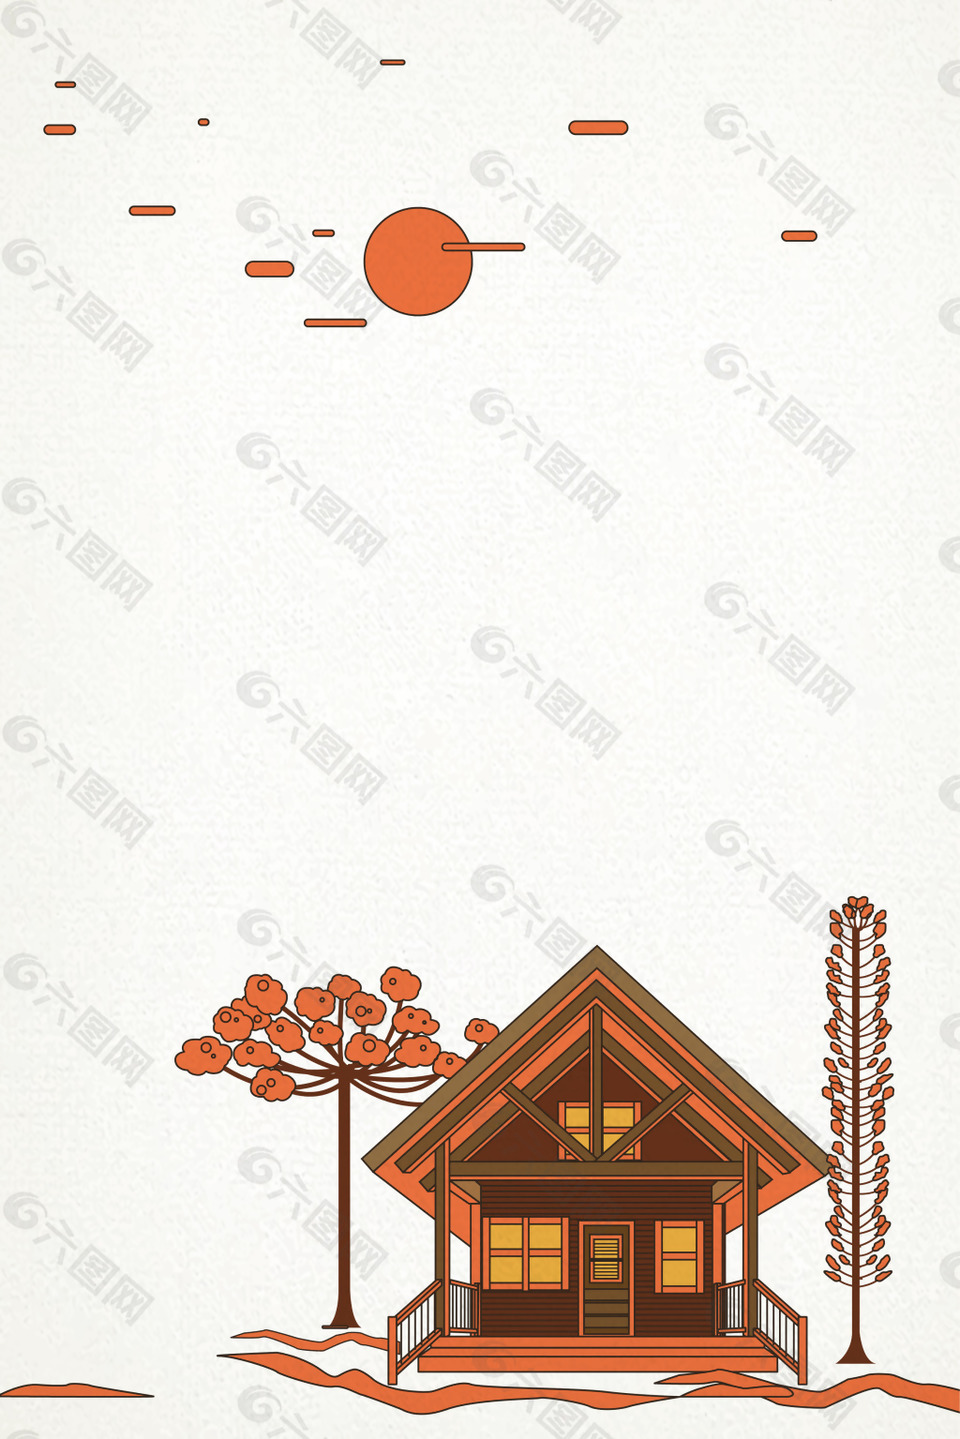 中秋节节日海报背景